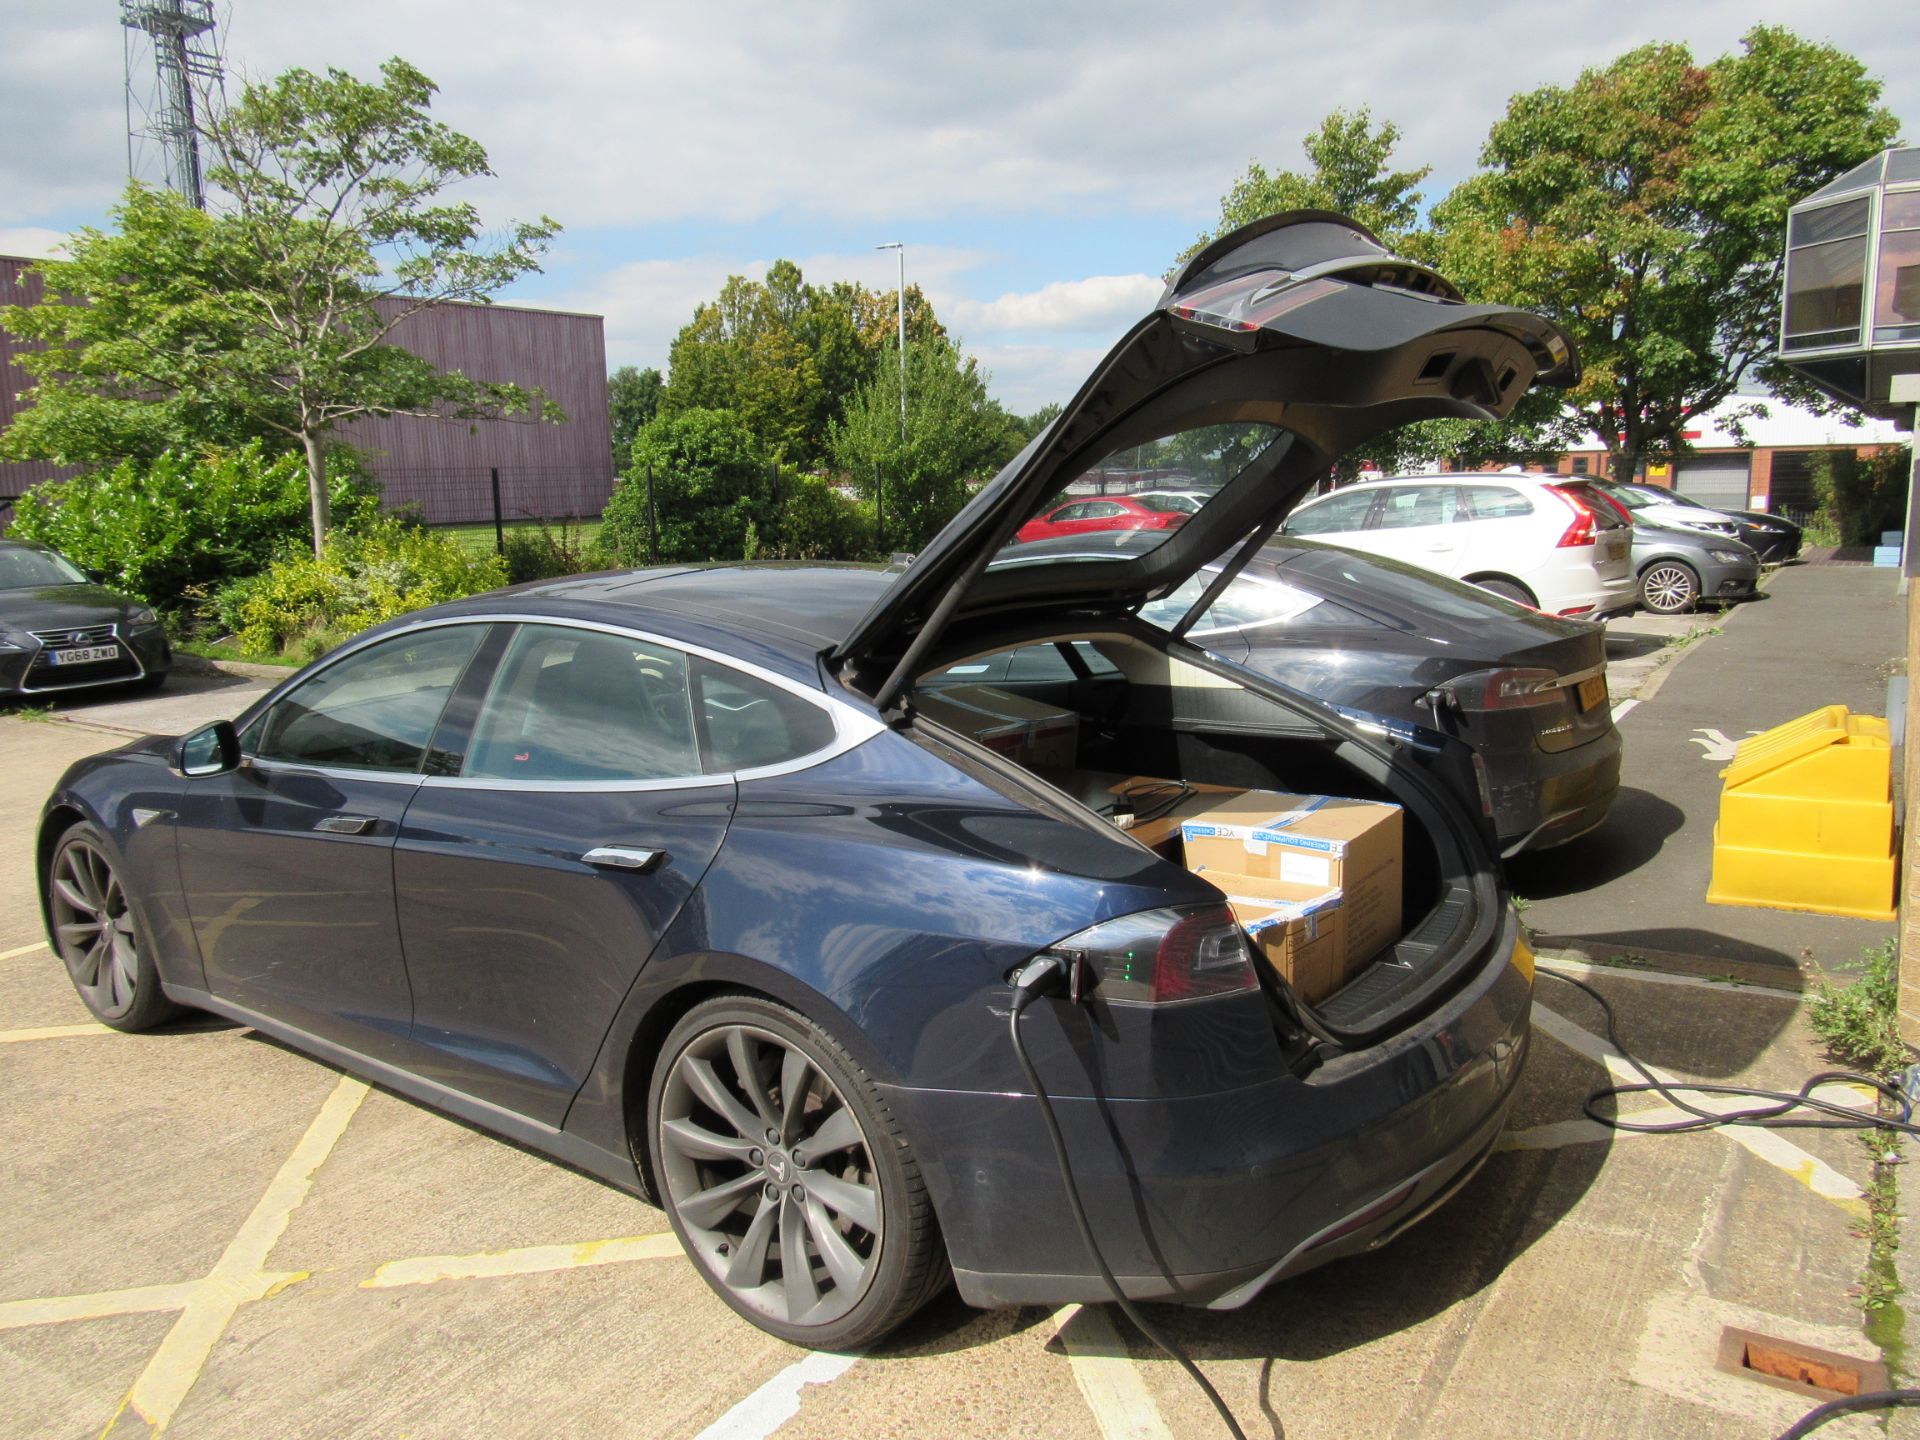 Tesla Model S, 5 Door Hatchback, Electric, Date of - Image 9 of 15